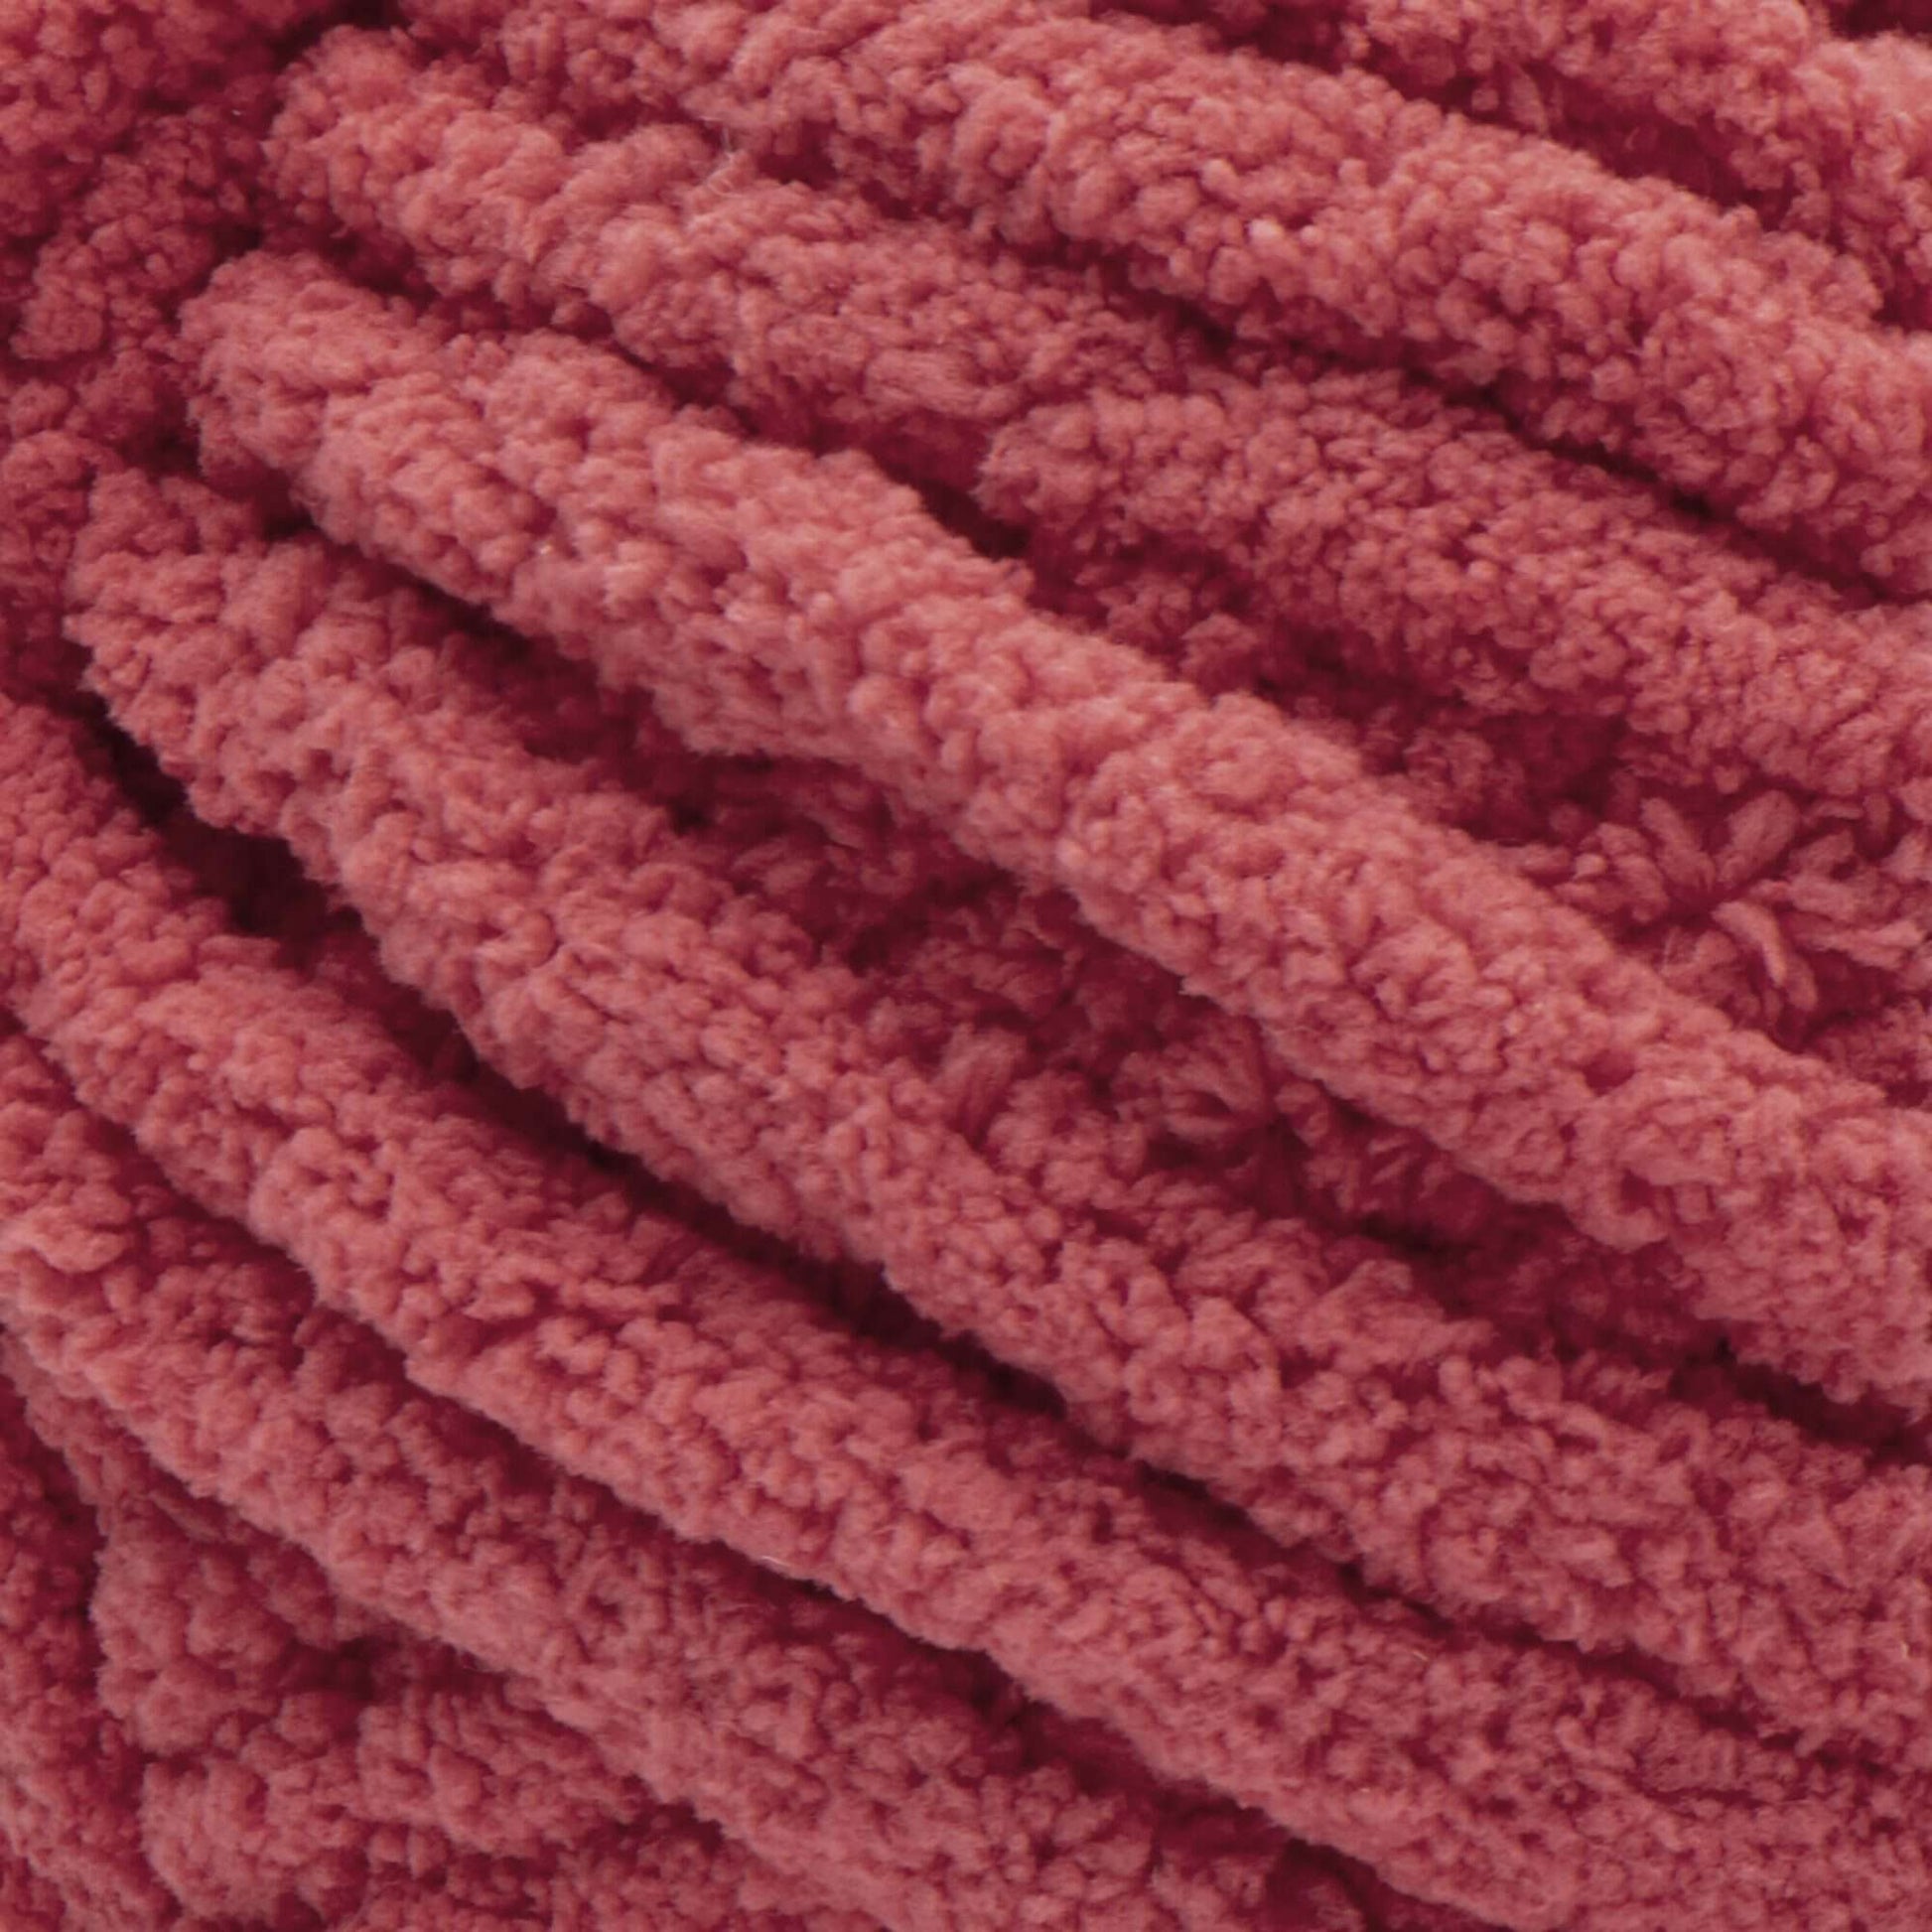 Bernat Blanket Extra Speckled Moonrise Yarn - 2 Pack of 300g/10.5oz -  Polyester - 7 Jumbo - 97 Yards - Knitting/Crochet 